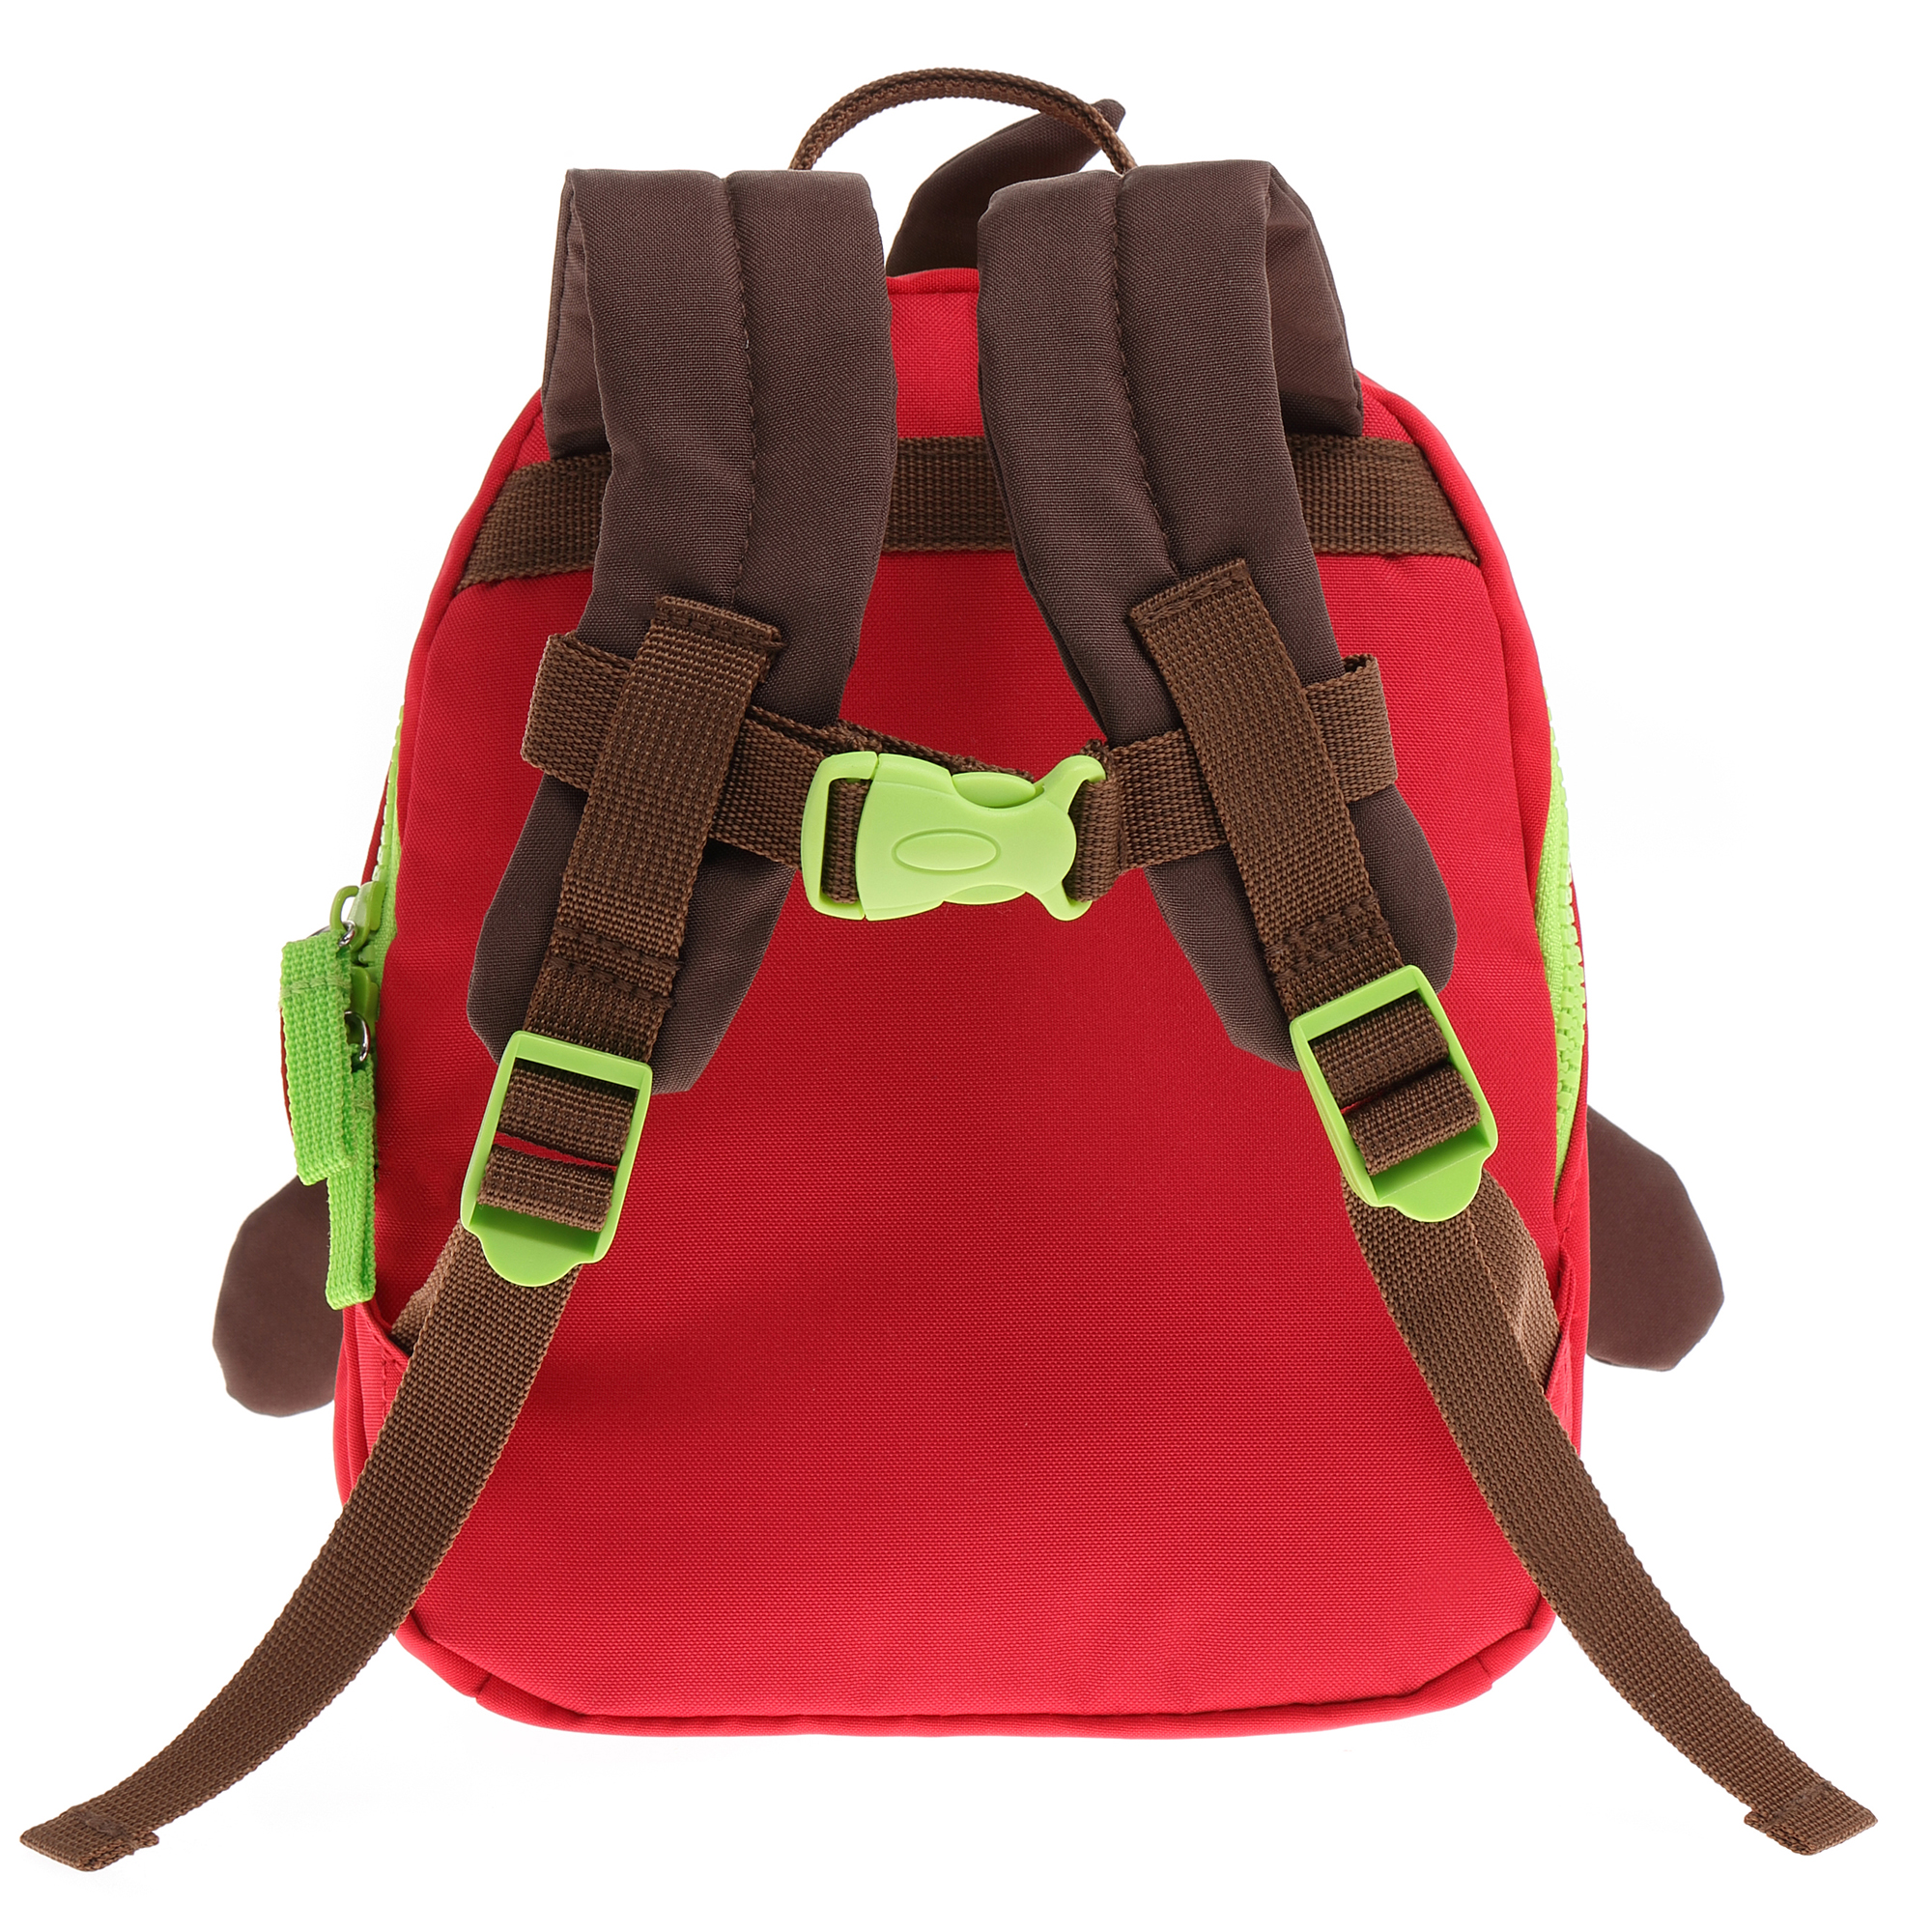 Children's backpack Dog